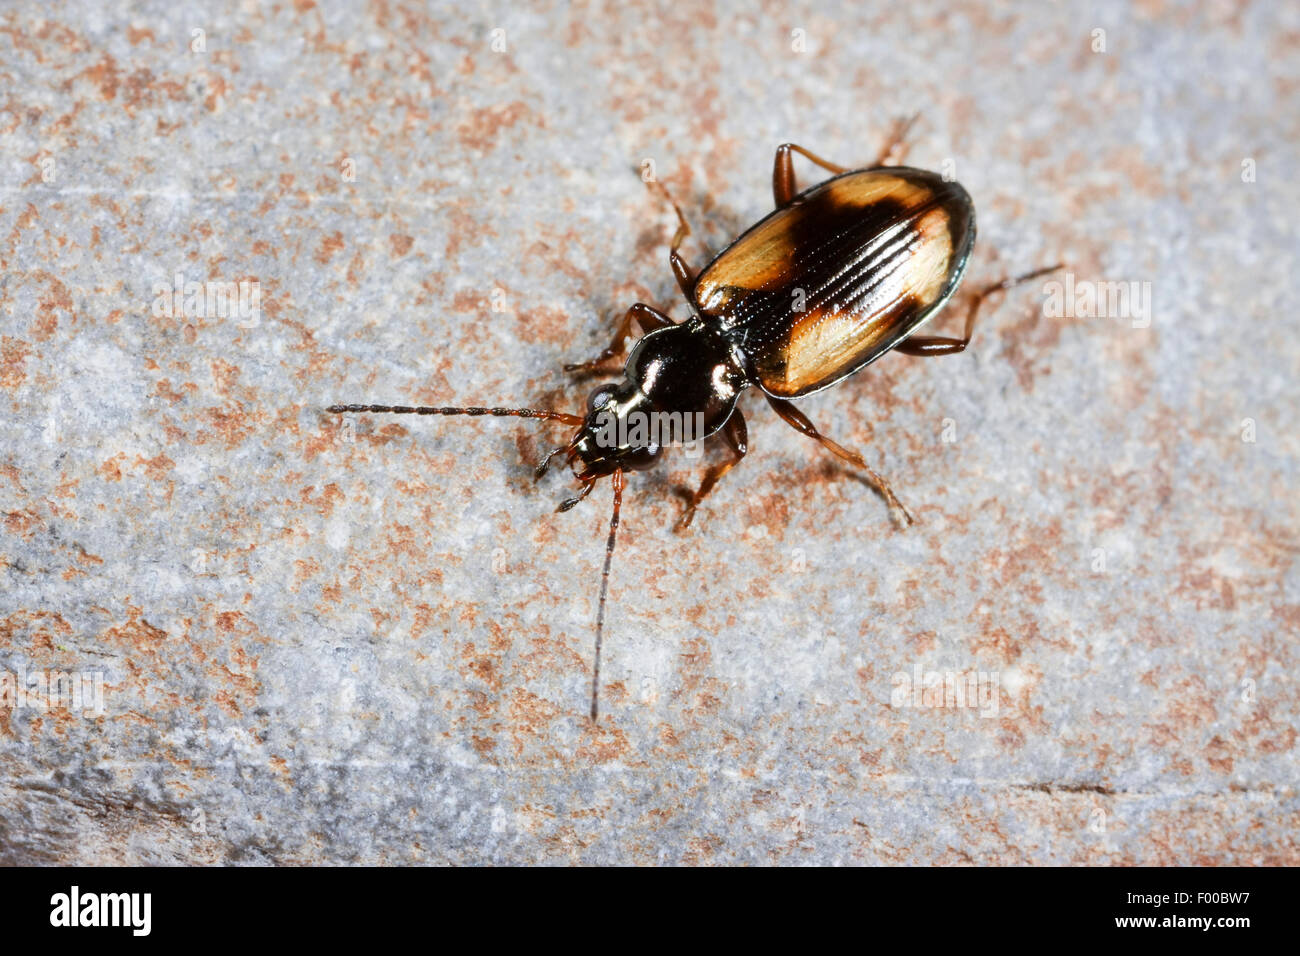 Ground beetle (Bembidion femoratum, Peryphus femoratum), on a stone, Germany Stock Photo